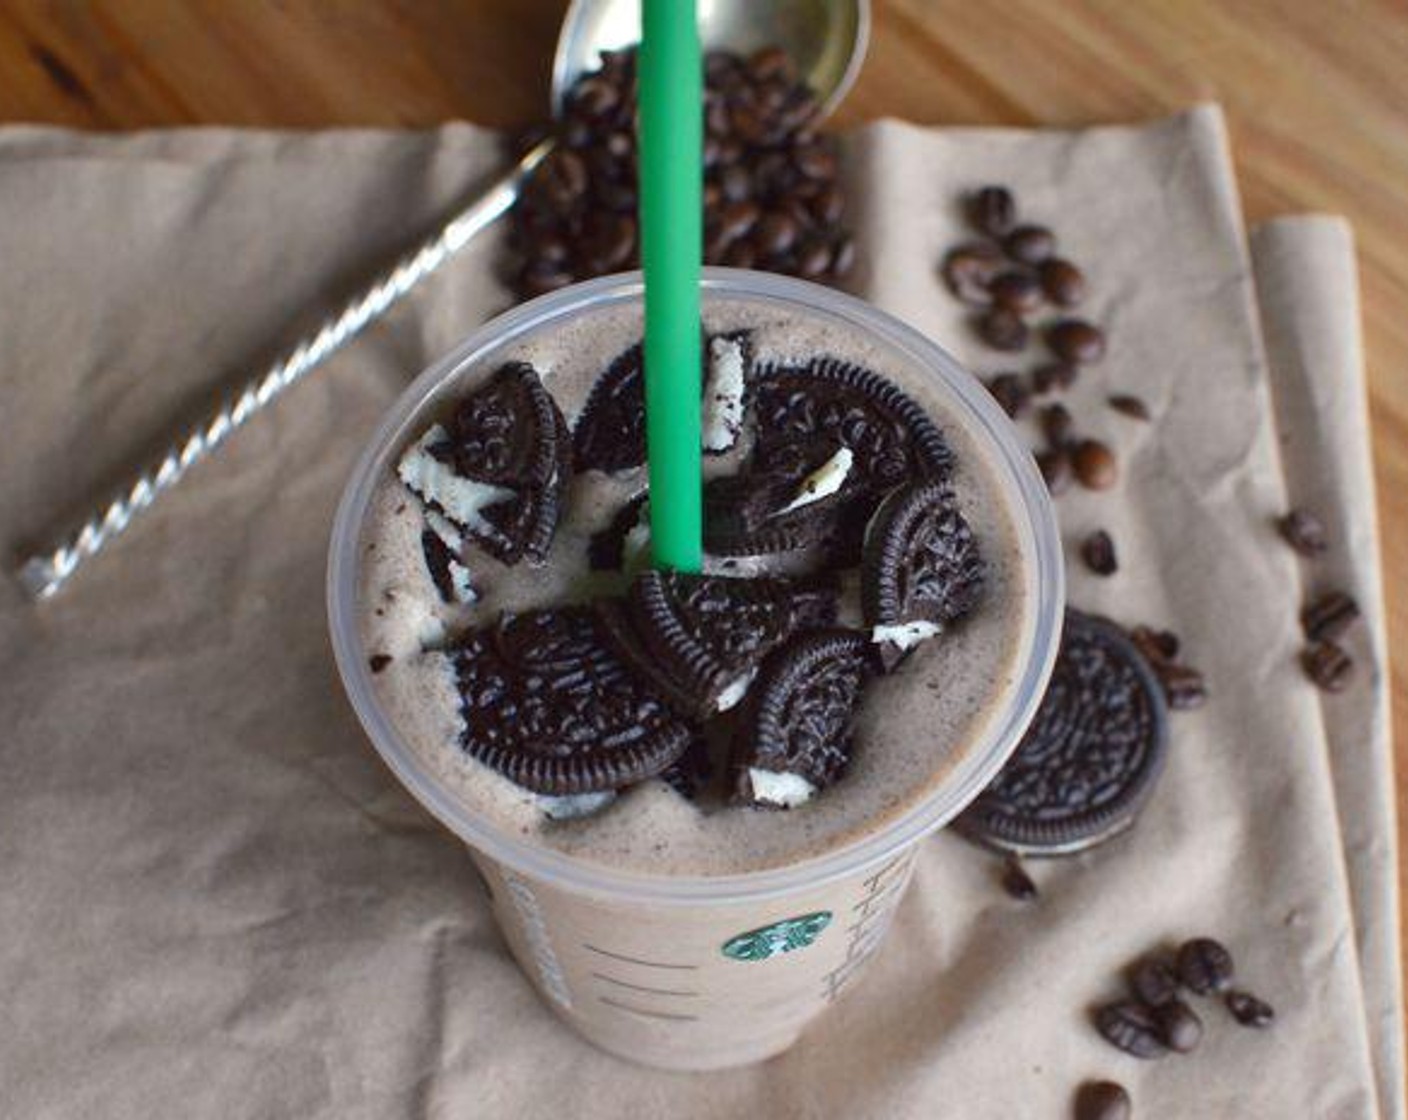 Starbucks Oreo Frappuccino